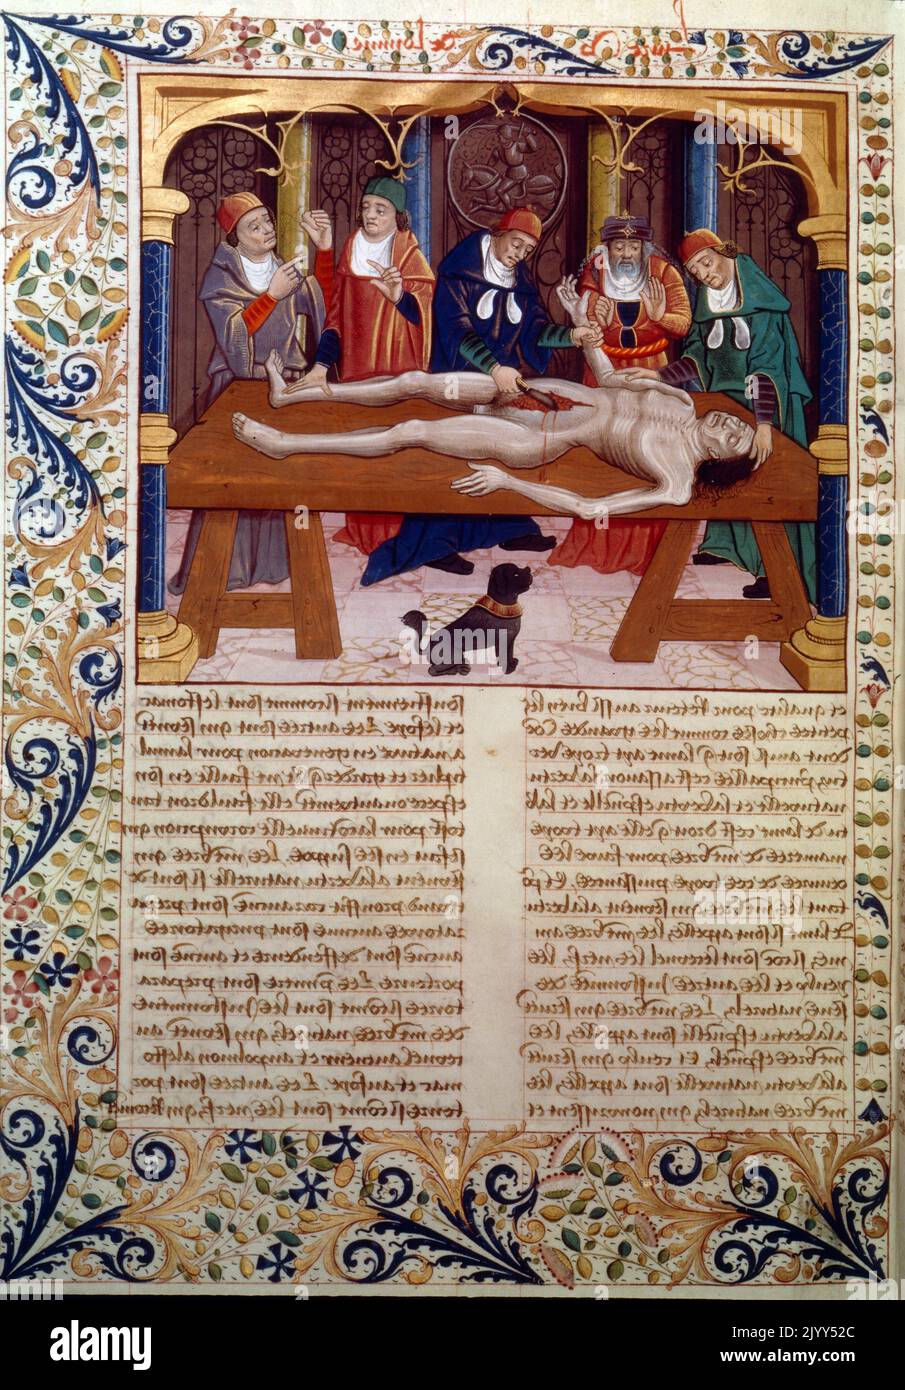 Illustration médiévale d'une autopsie réalisée au Moyen âge. Du manuscrit français "les propriétés des choses" de Bartholomaeus Anglicus, fin 15th siècle Banque D'Images